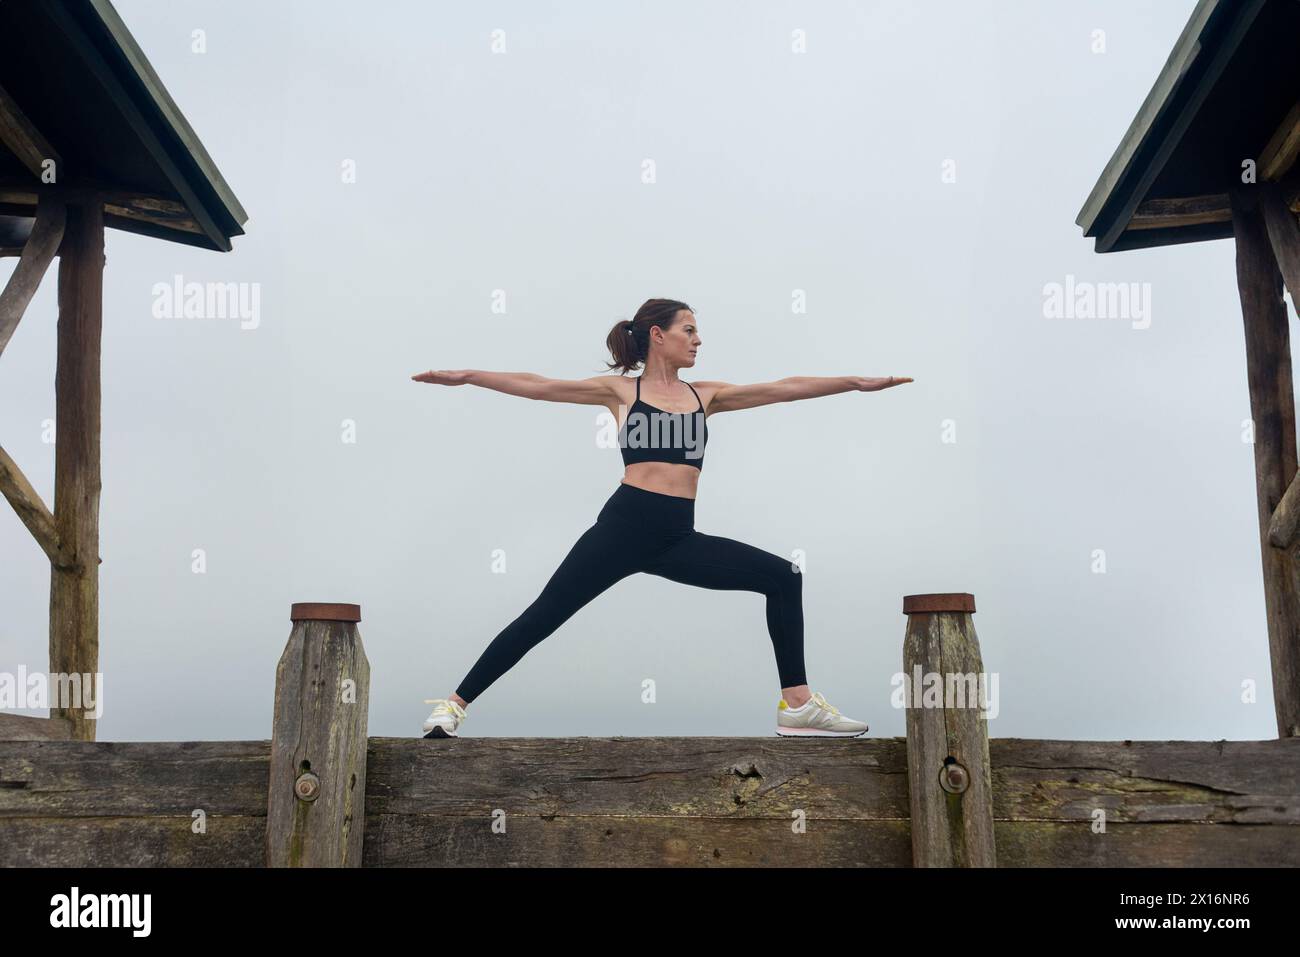 Mujer deportiva haciendo una pose de yoga guerrero, afuera por un edificio de madera Foto de stock